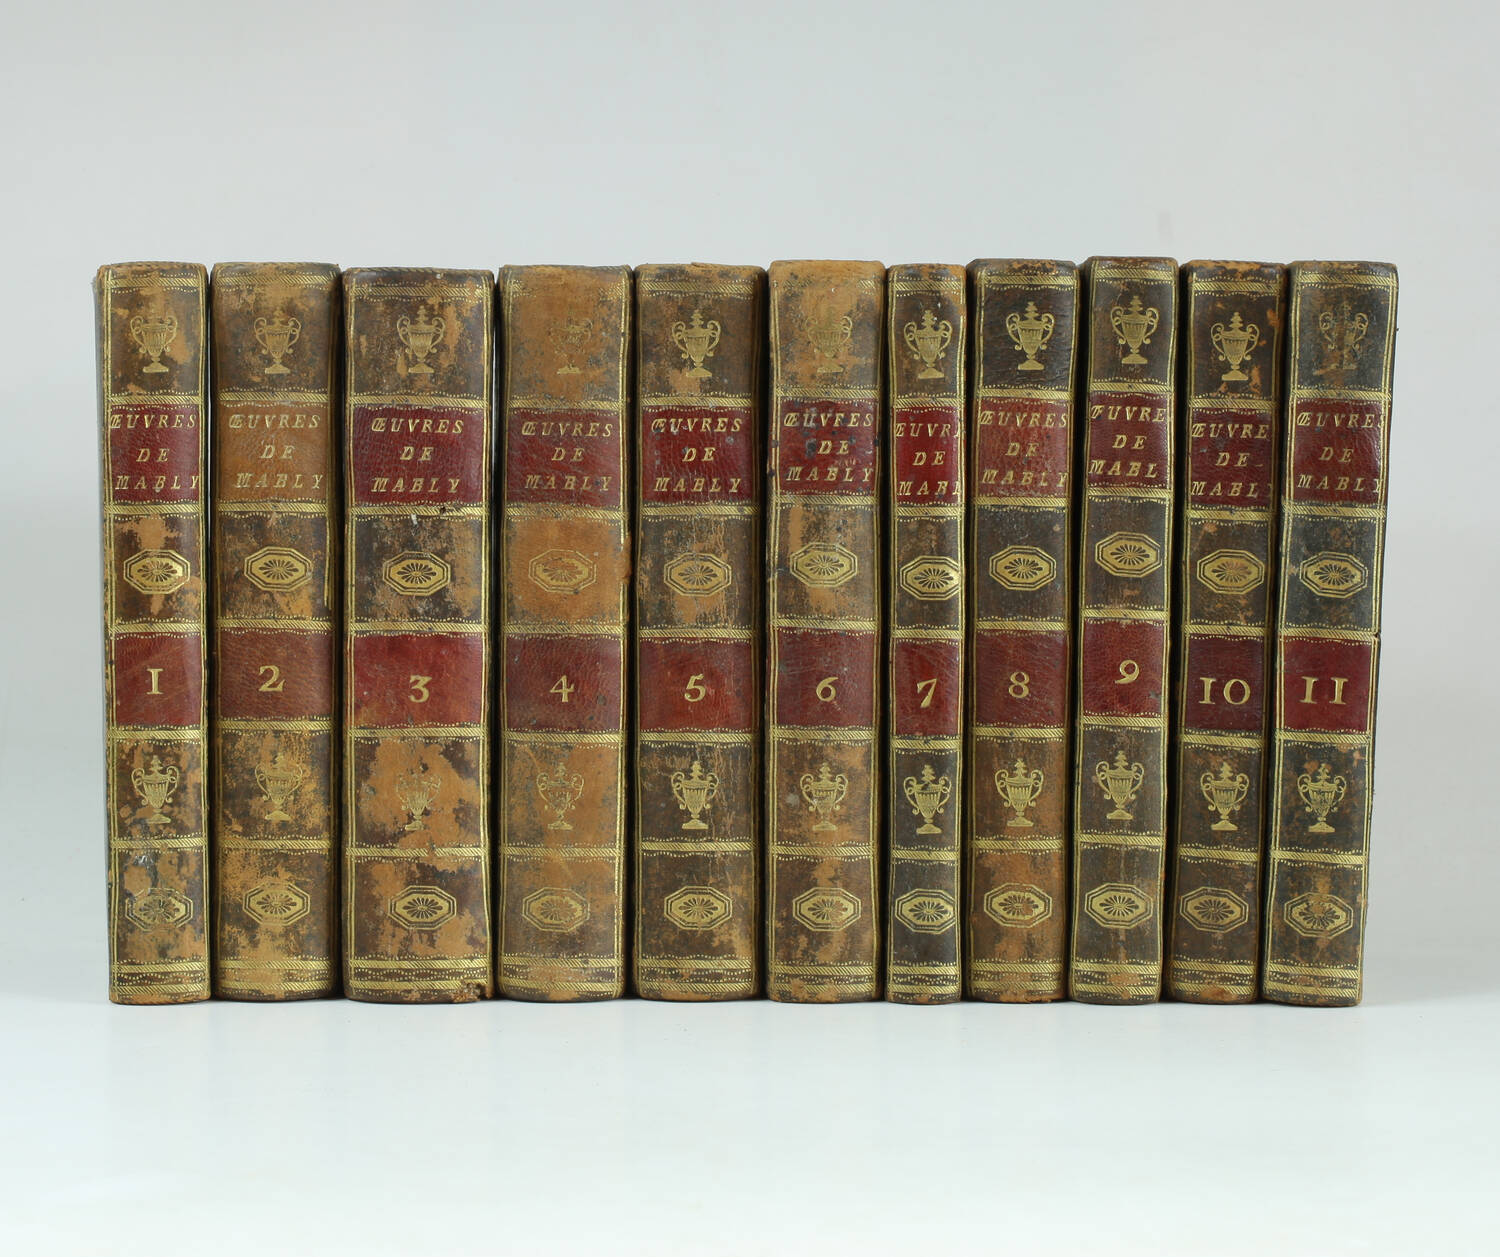 MABLY - Oeuvres politiques, philosophiques et morales Desray, An II - 11 volumes - Photo 0, livre ancien du XVIIIe siècle